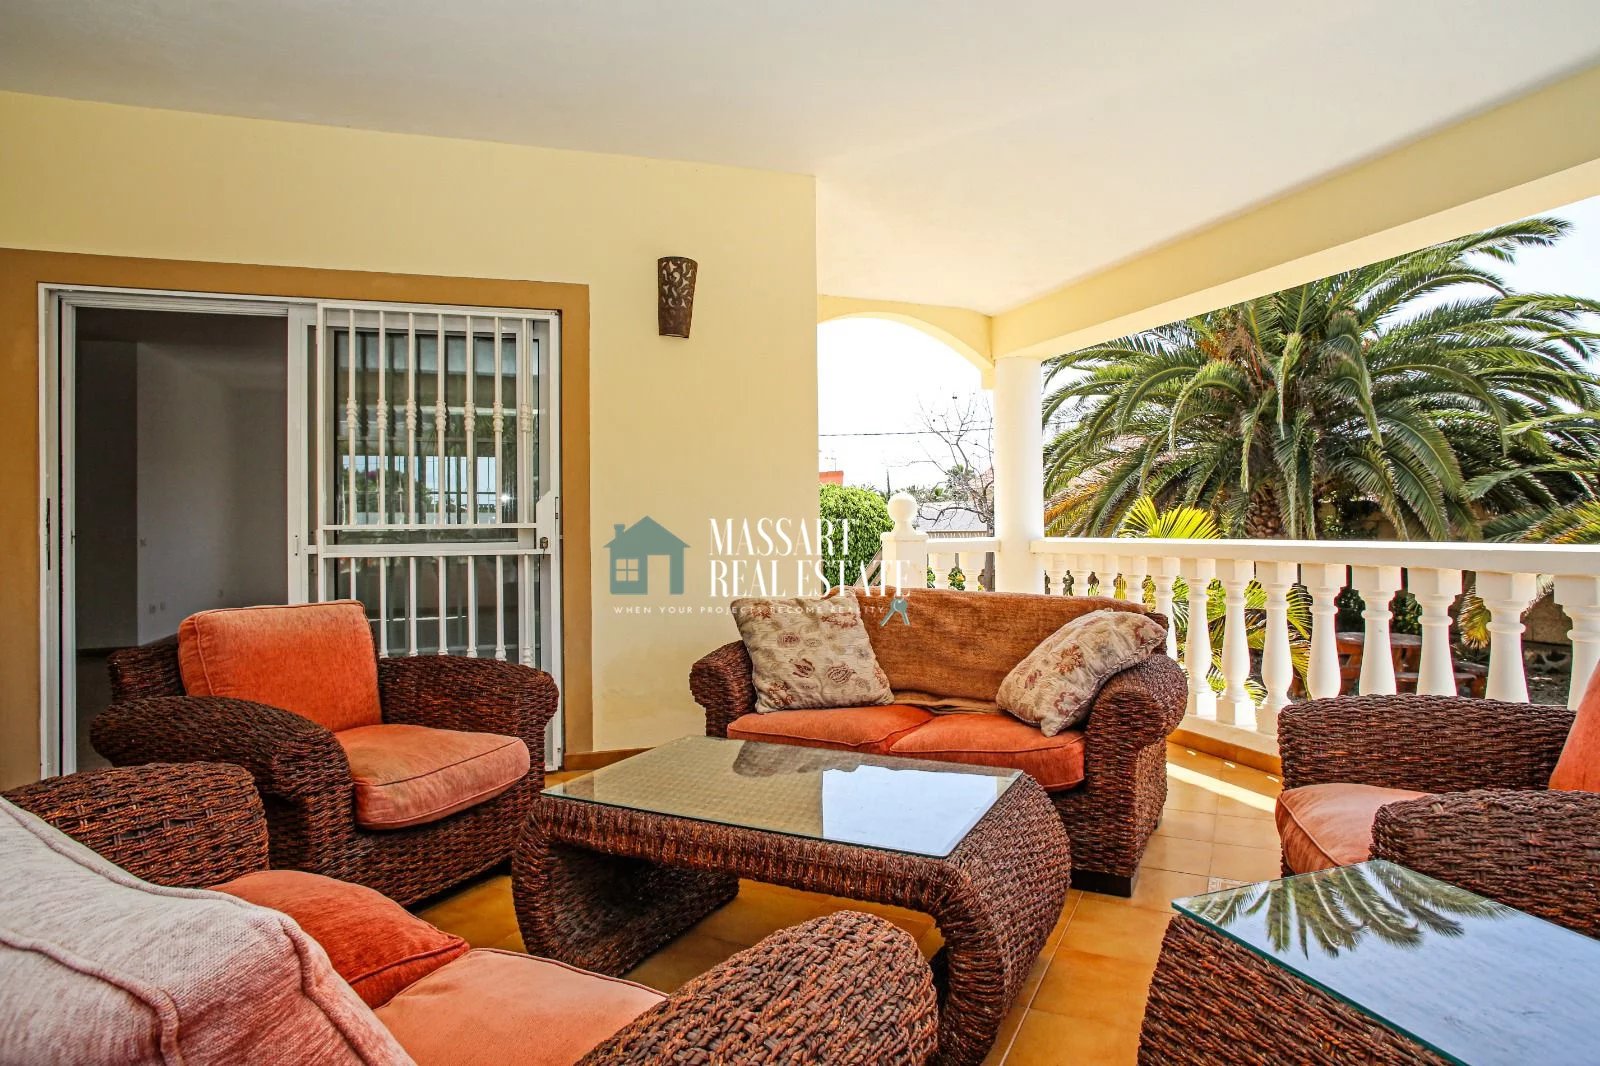 Prächtige Villa auf einem 1005 m2 großen Grundstück in einer absolut ruhigen Gegend in La Estrella.